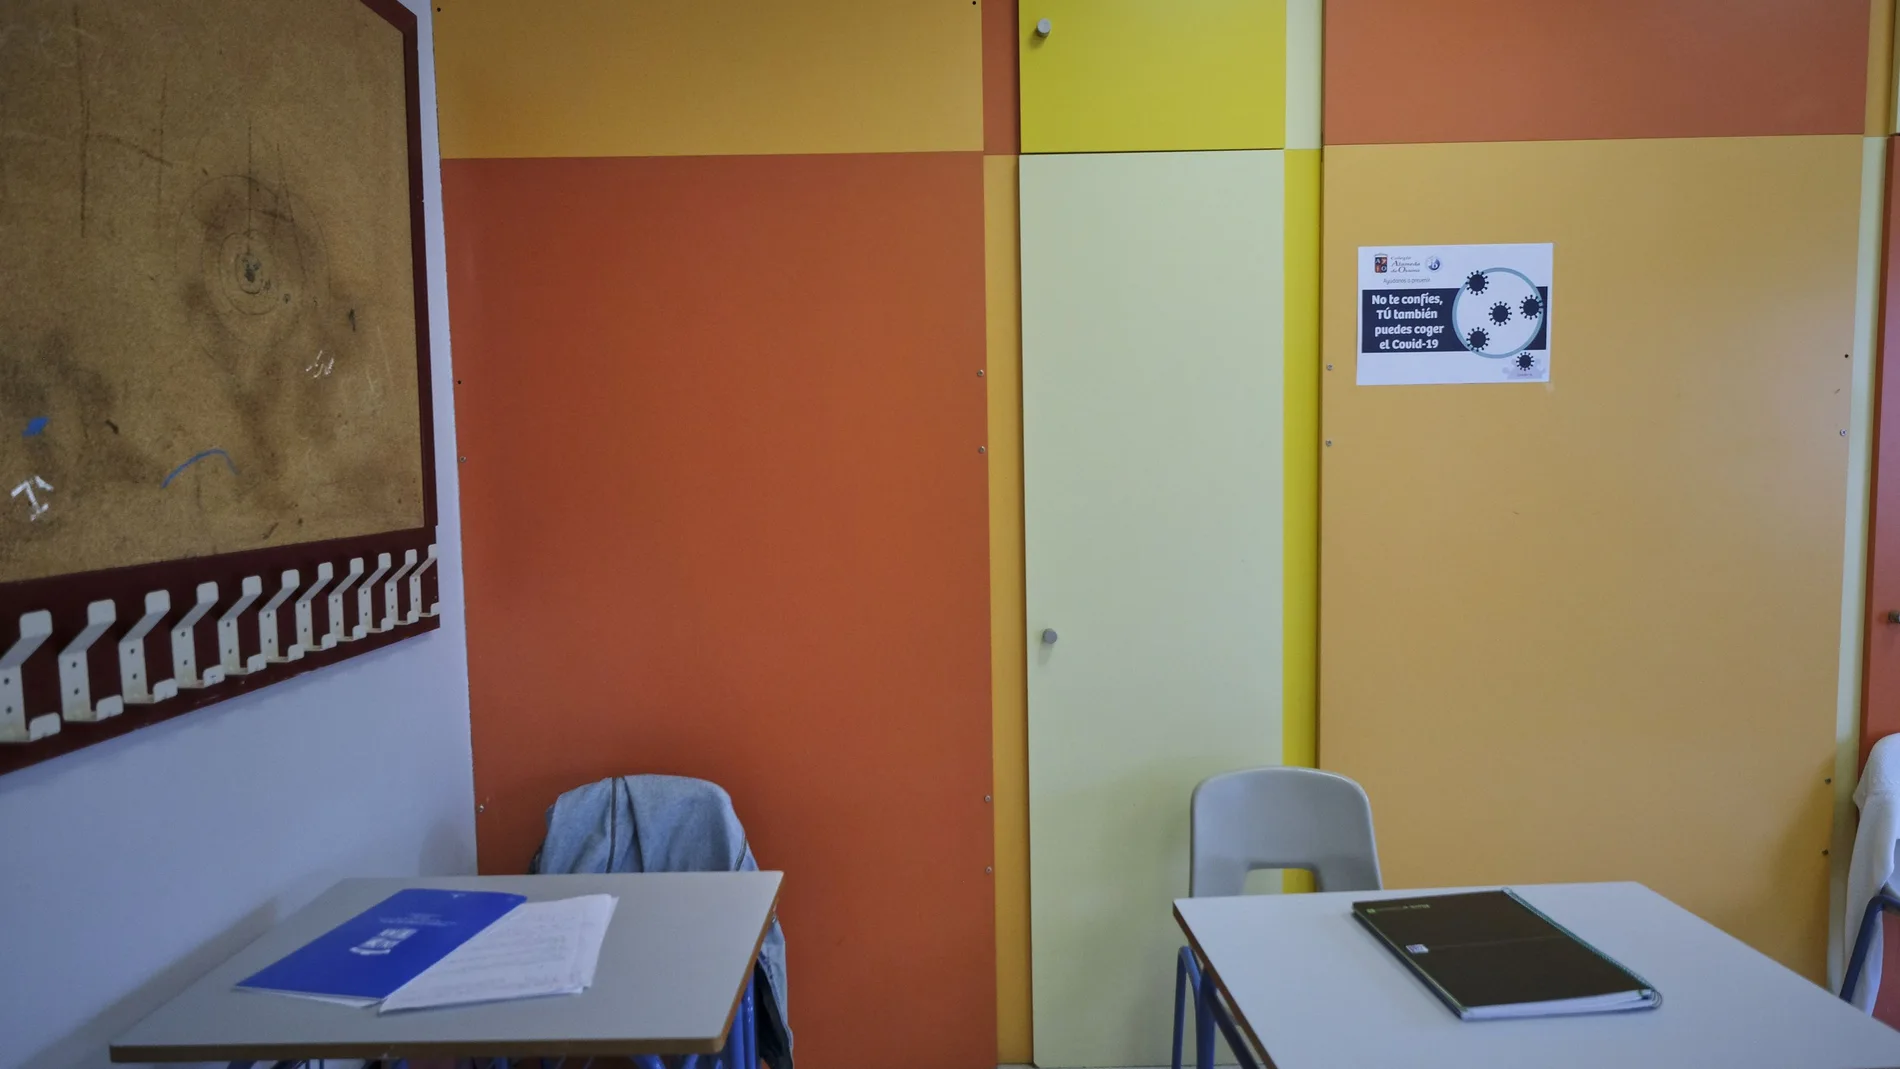 Cuadernos en dos mesas de un aula de un colegio del municipio sevillano de Osuna